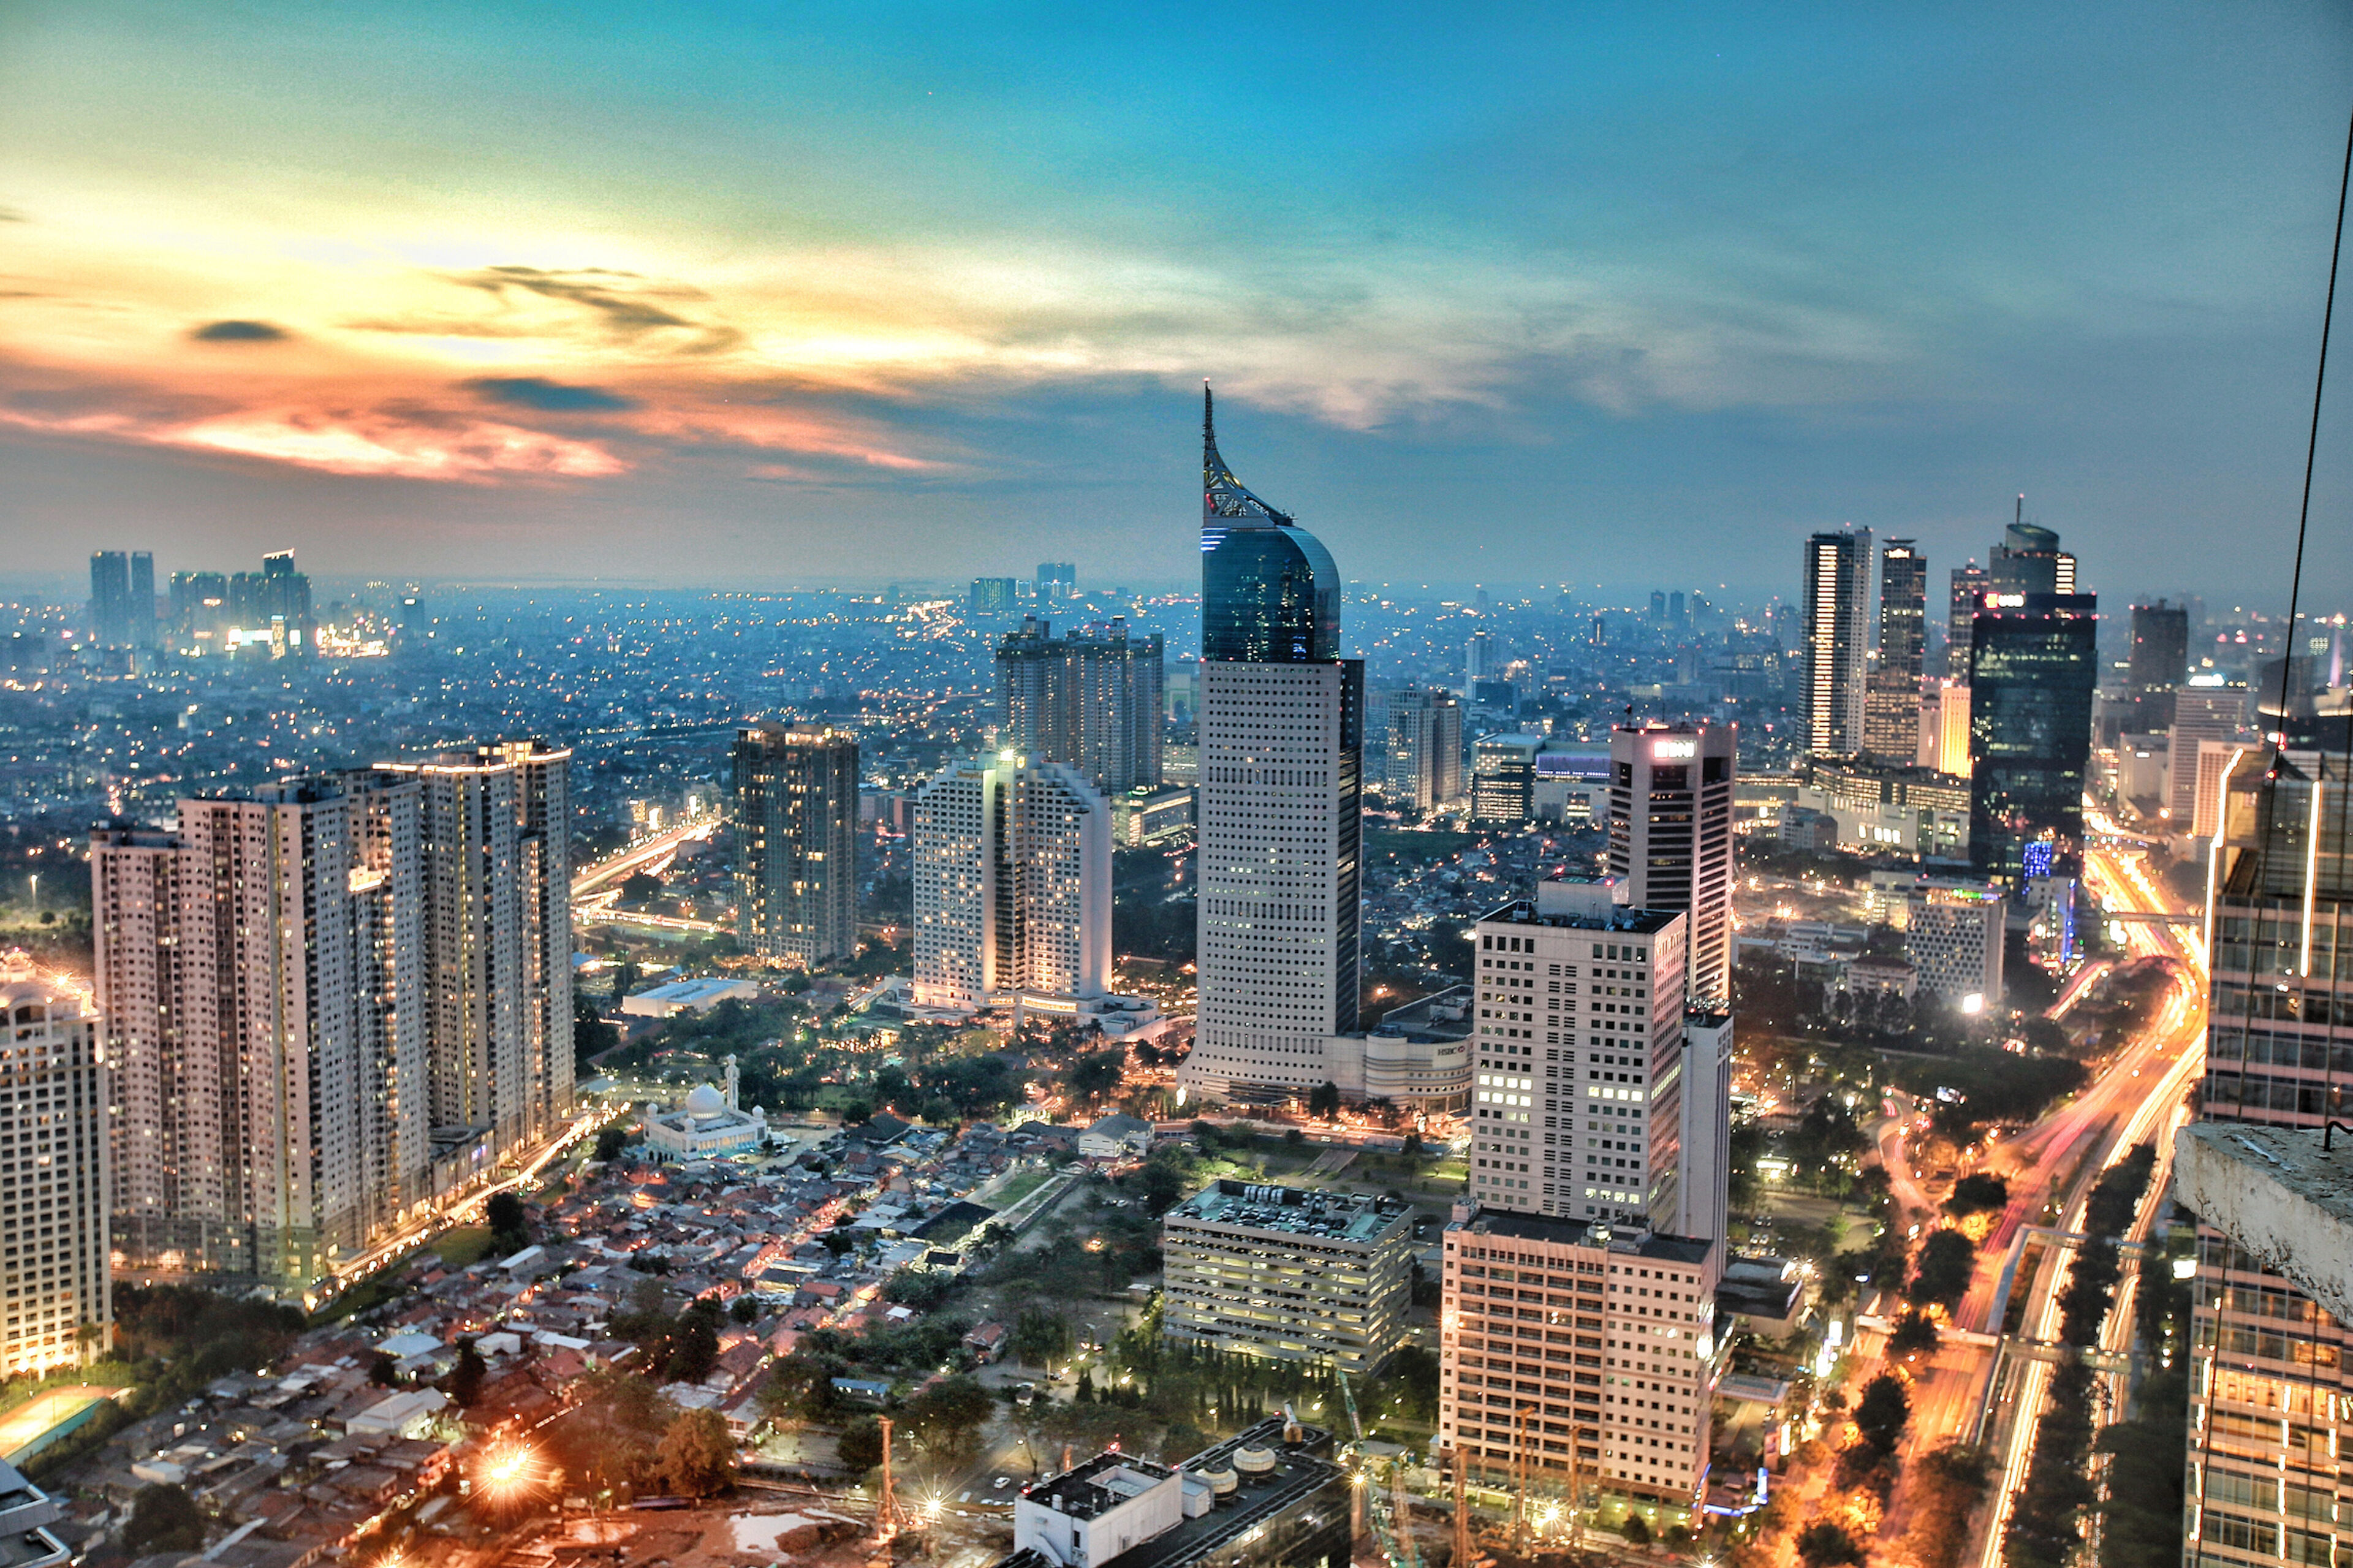 L'horizon de Jakarta au crépuscule, avec des gratte-ciels illuminés et un coucher de soleil vibrant en arrière-plan.